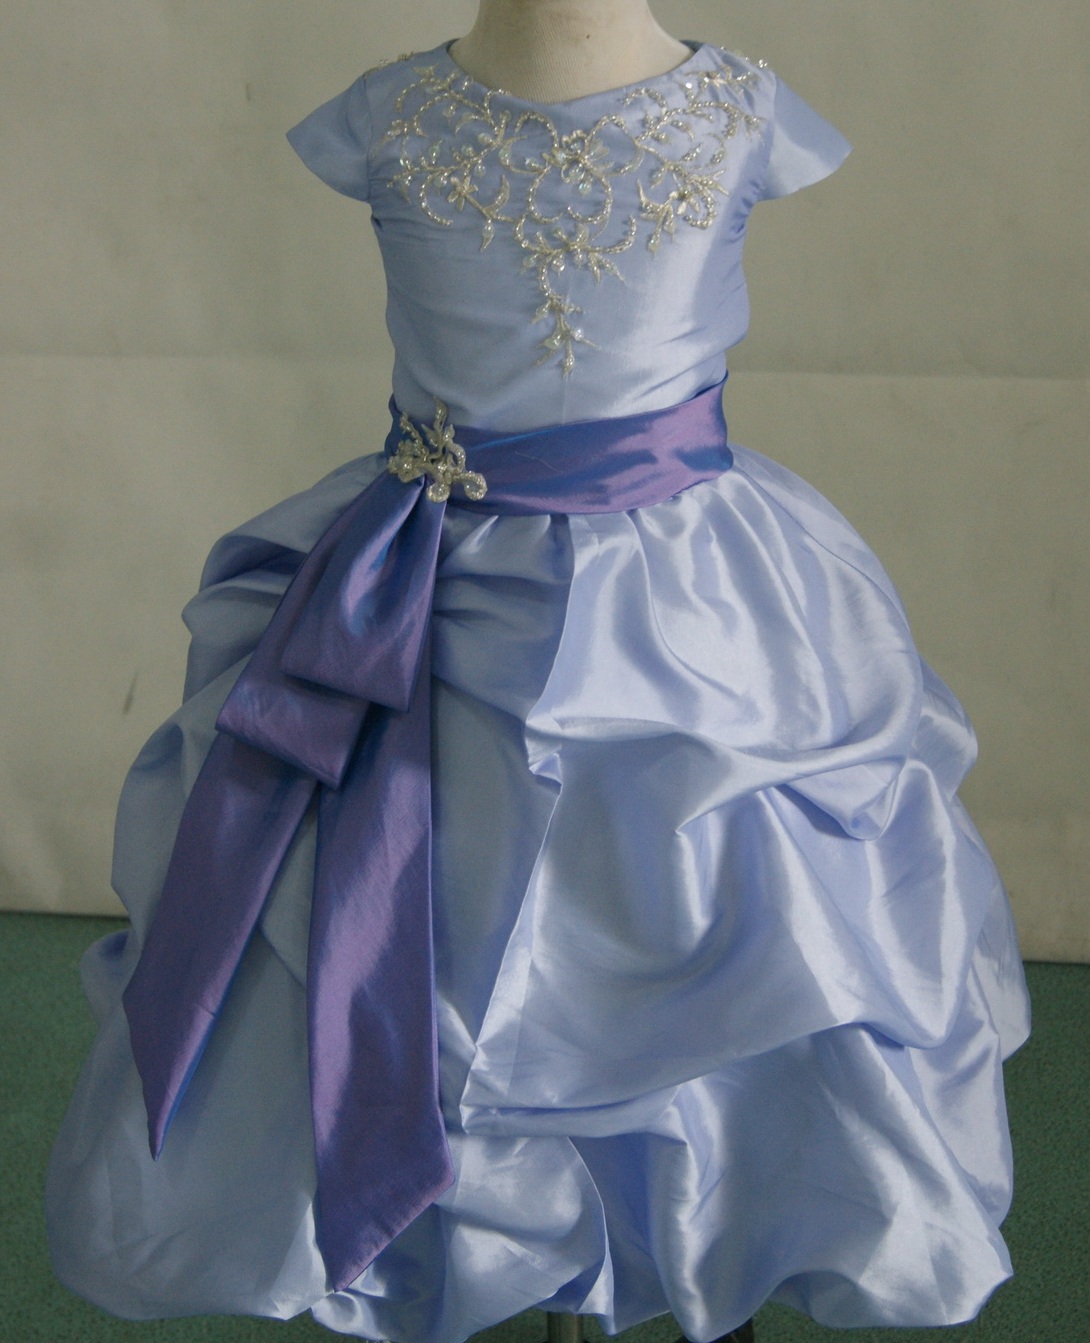 Lavender dress with violet sash